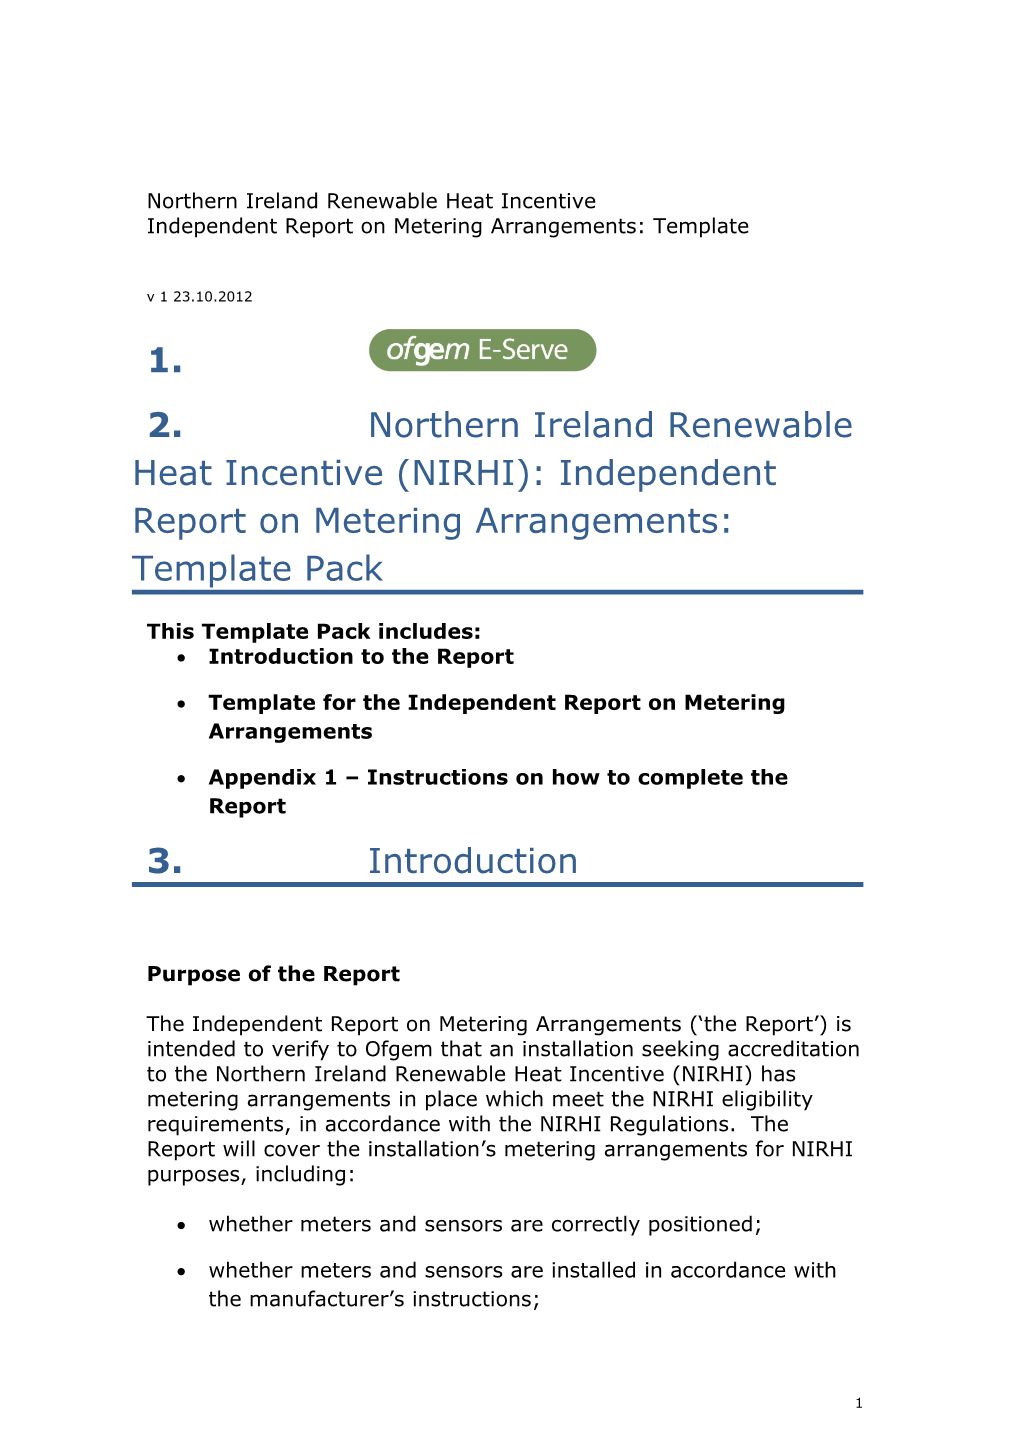 Northern Ireland Renewable Heat Incentive- Independent Report on Metering Arrangements